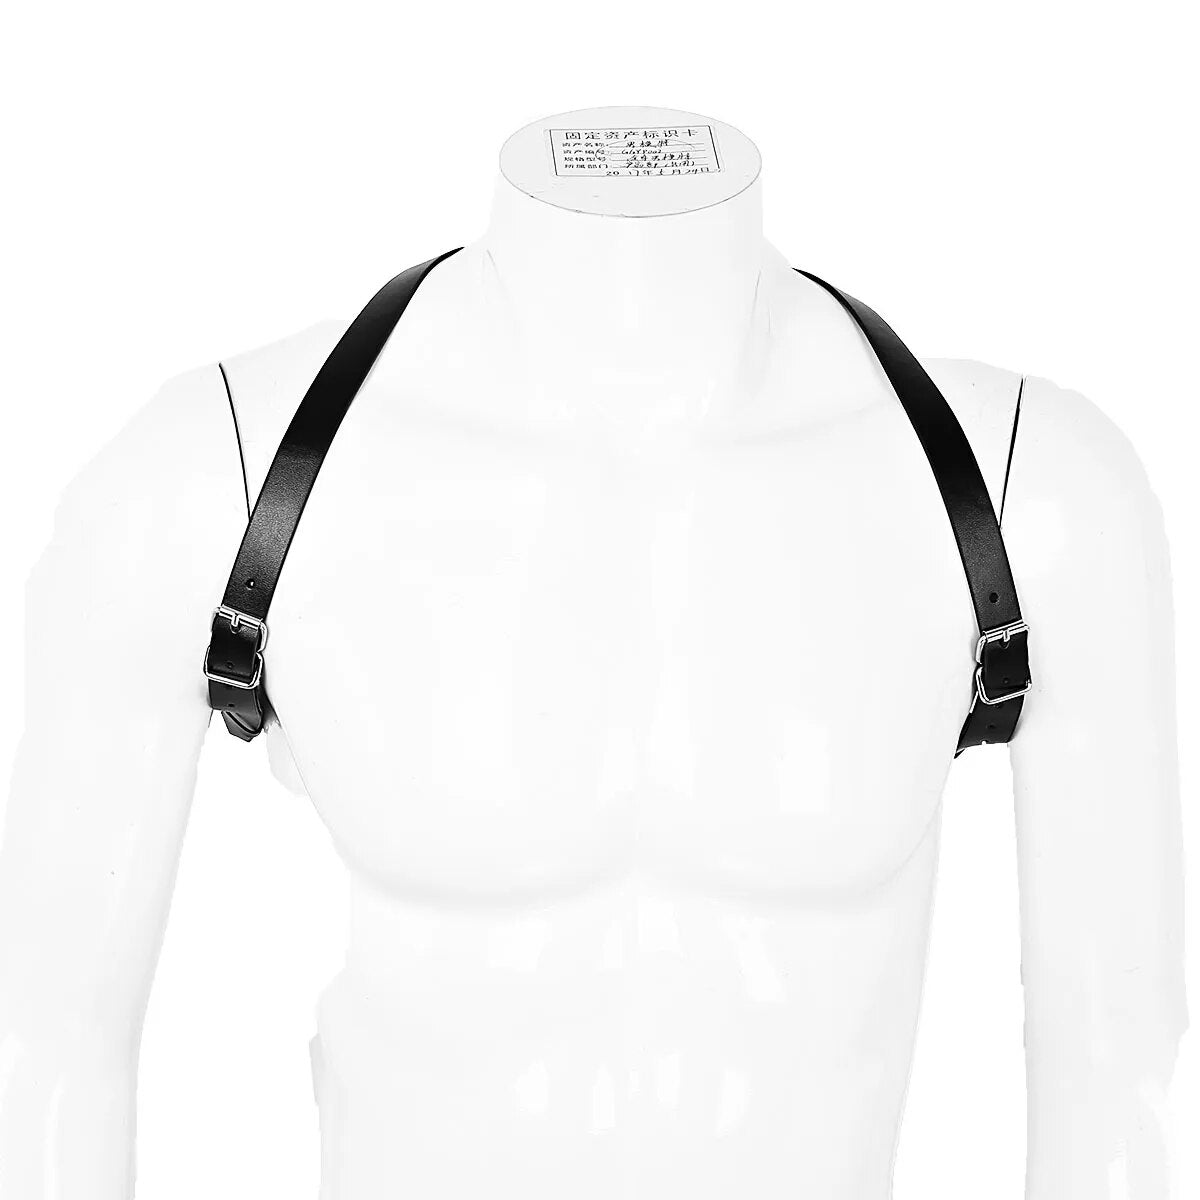 Men Black Adjustable Imitation Leather Double Shoulders Punk Costume Straps Men Harness Adult BDSM Bondage Belt Lingerie